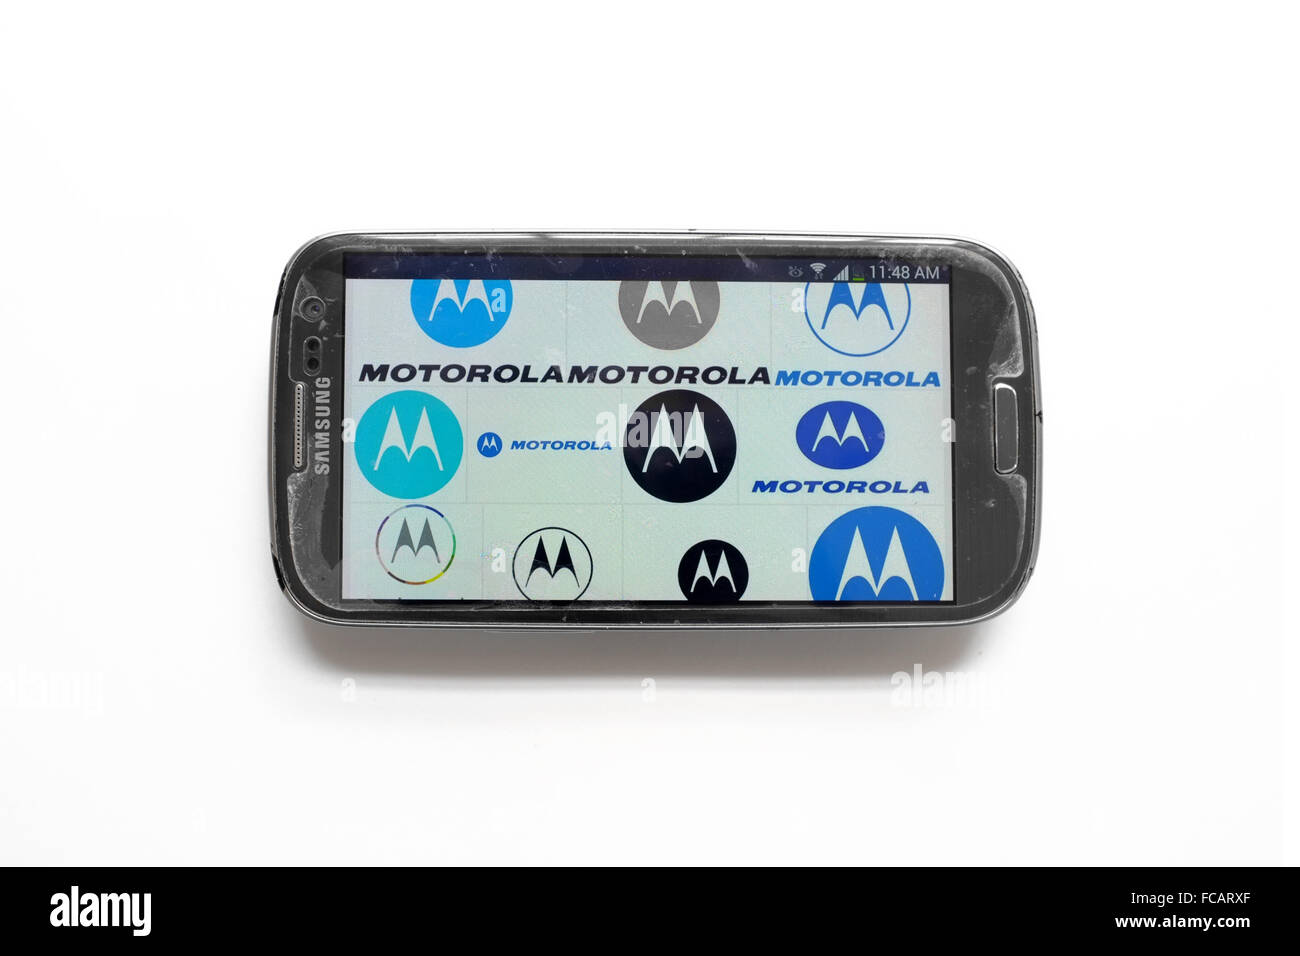 Motorola simboli sullo schermo dello smartphone fotografati contro uno sfondo bianco. Foto Stock